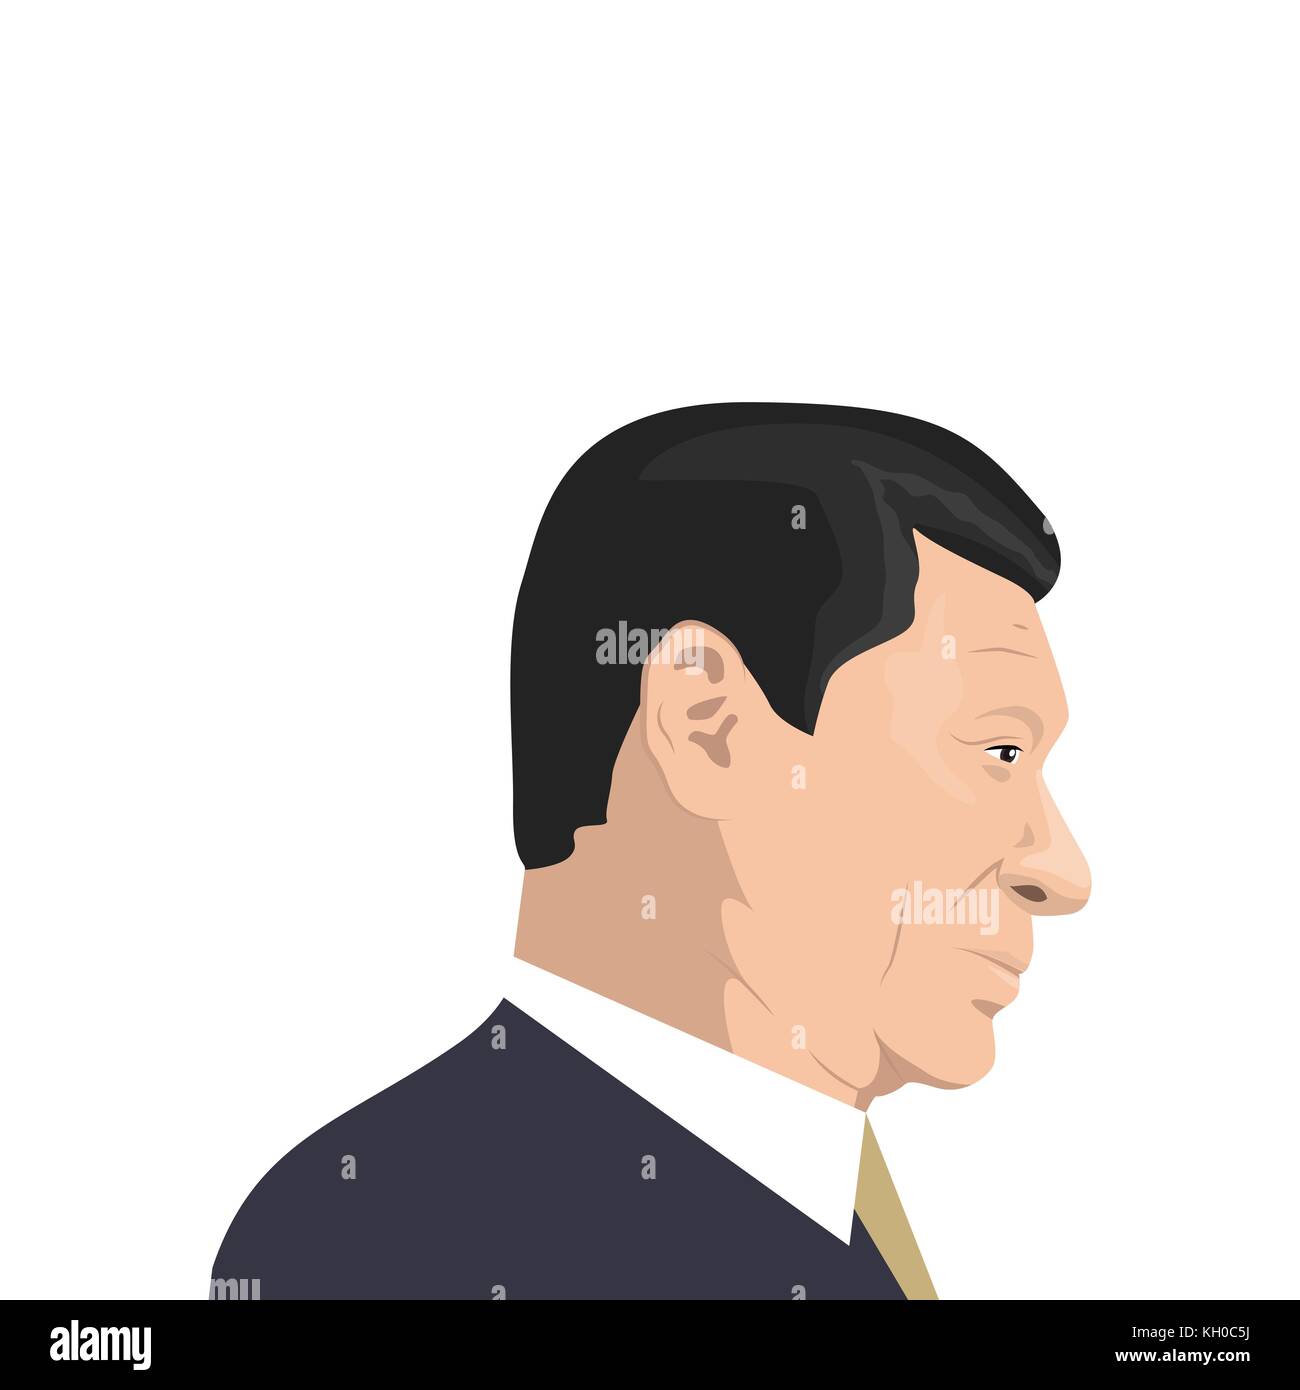 November 11, 2017. Redaktionelle Illustration von Xi Jinping Portrait - der Generalsekretär der Kommunistischen Partei Chinas, der Präsident des Menschen Stock Vektor